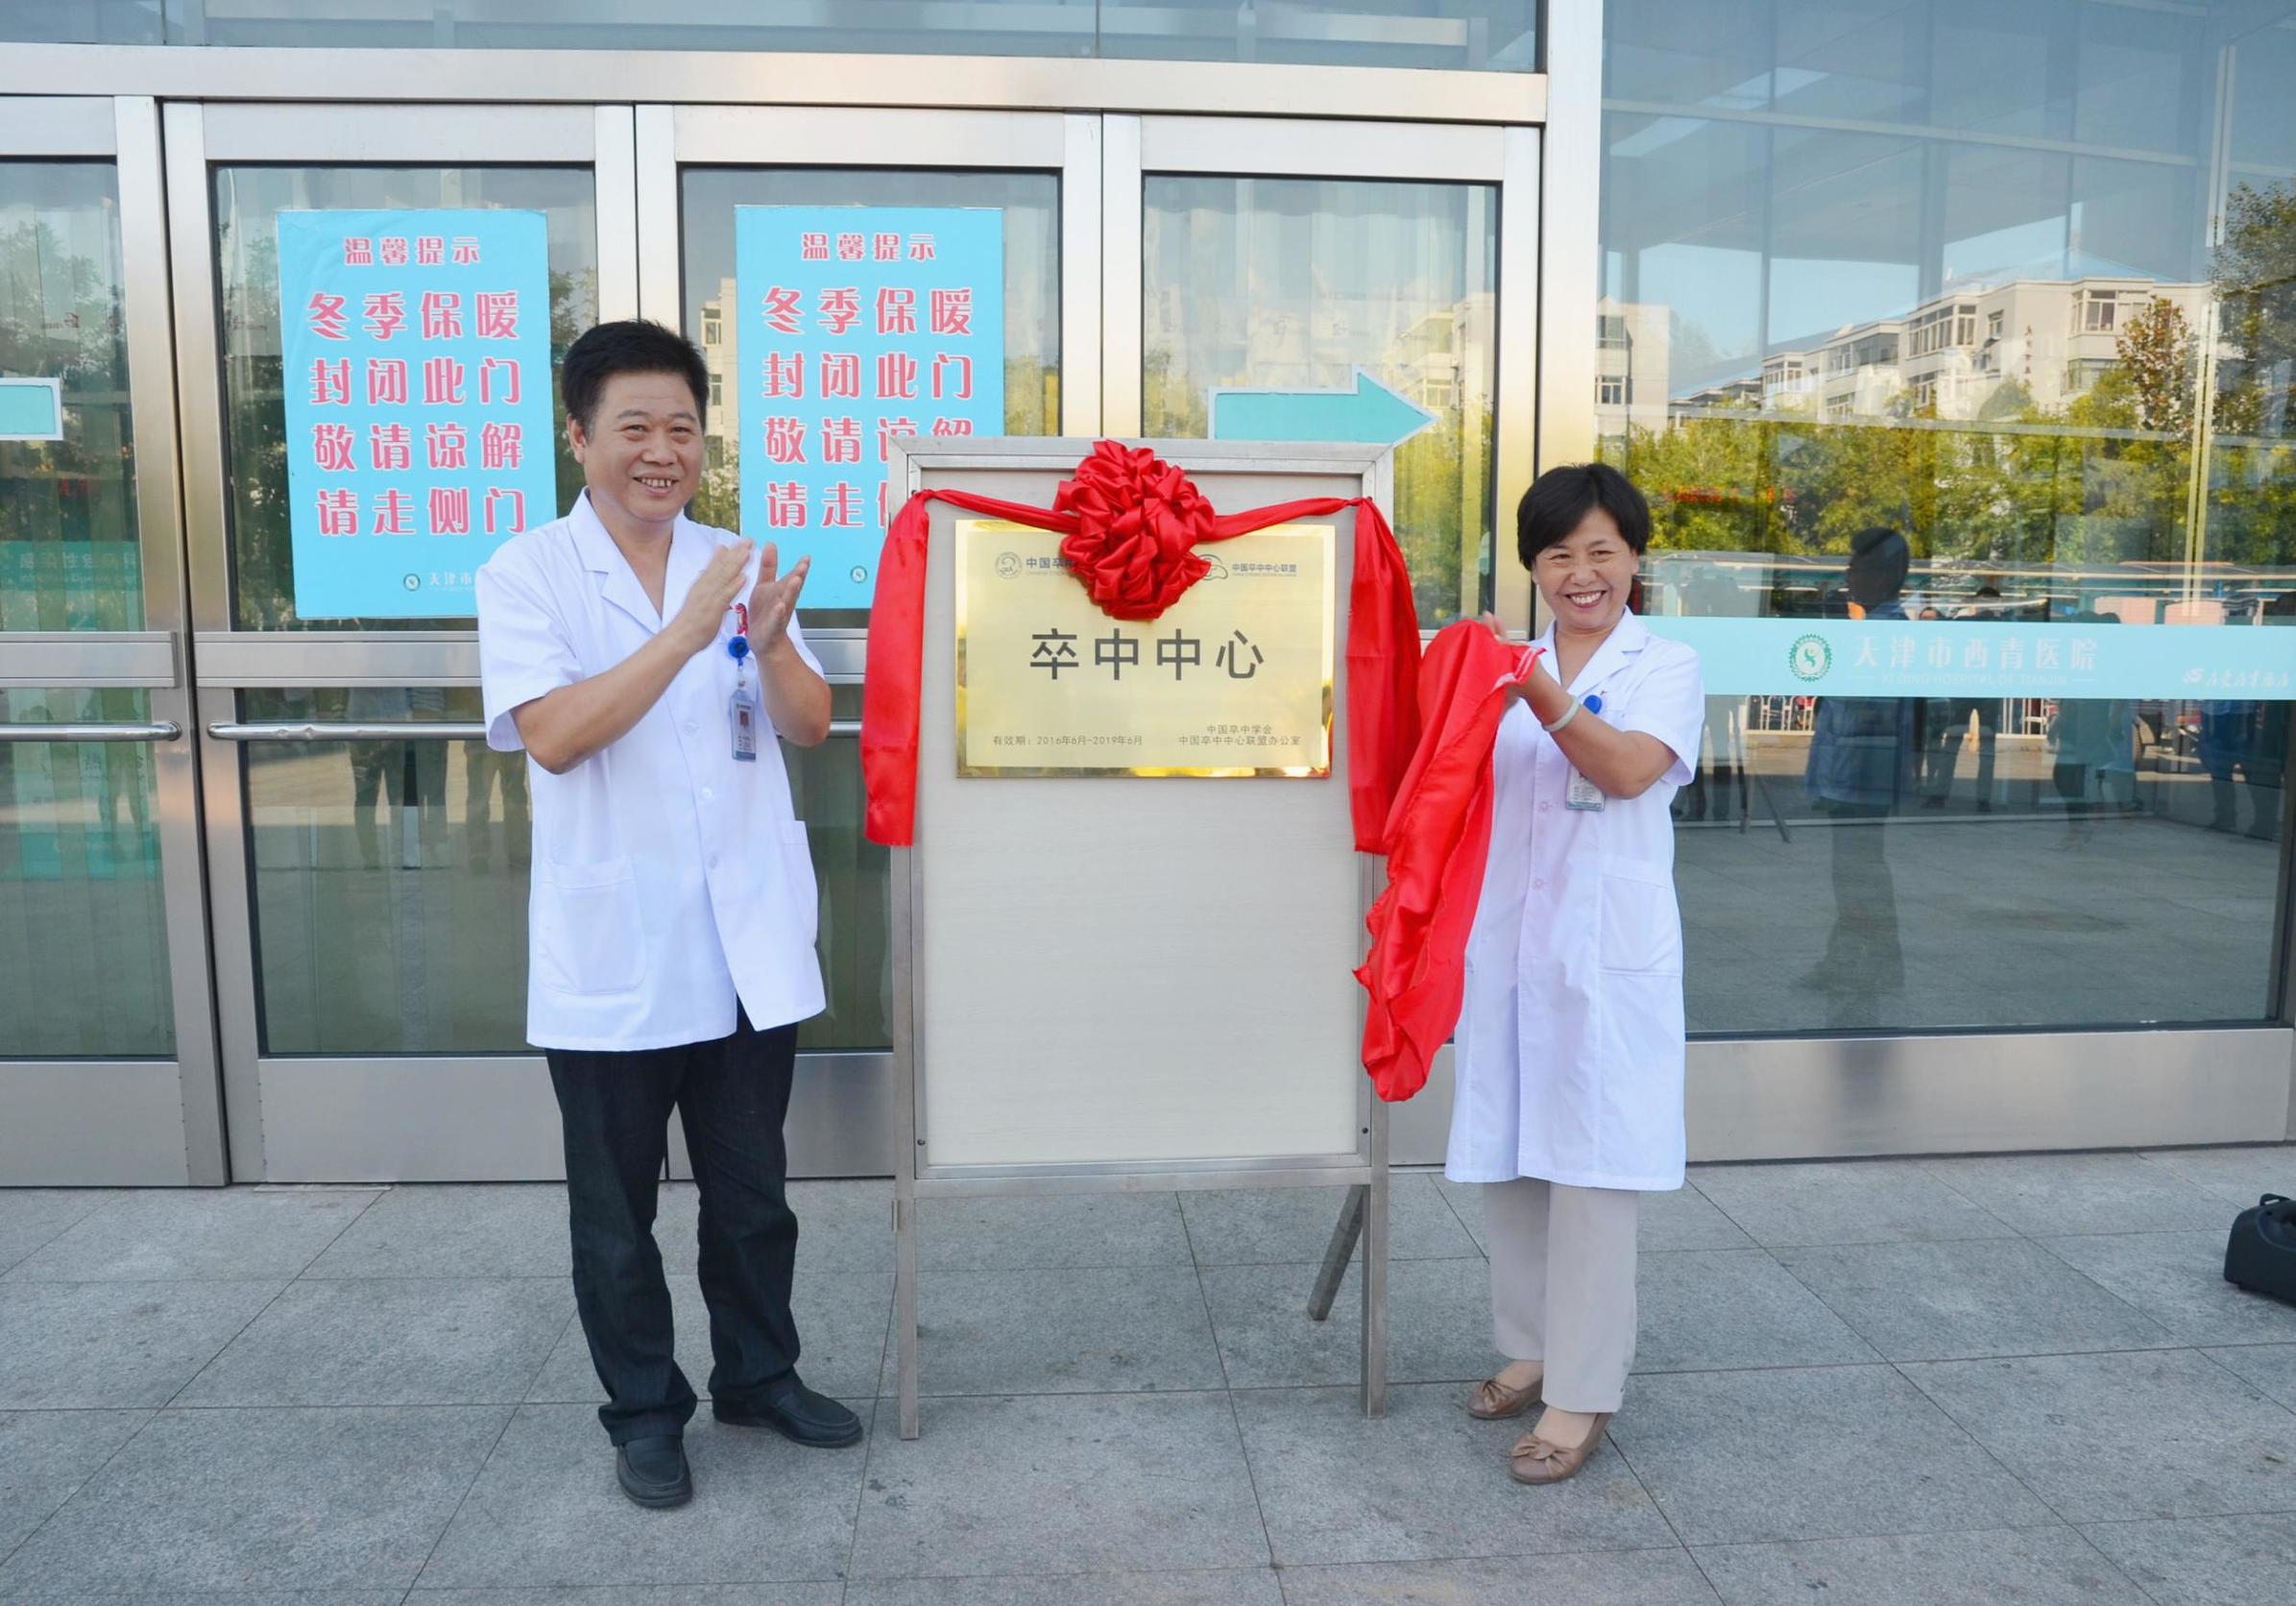 天津市西青医院国家级脑“卒中中心”正式揭牌